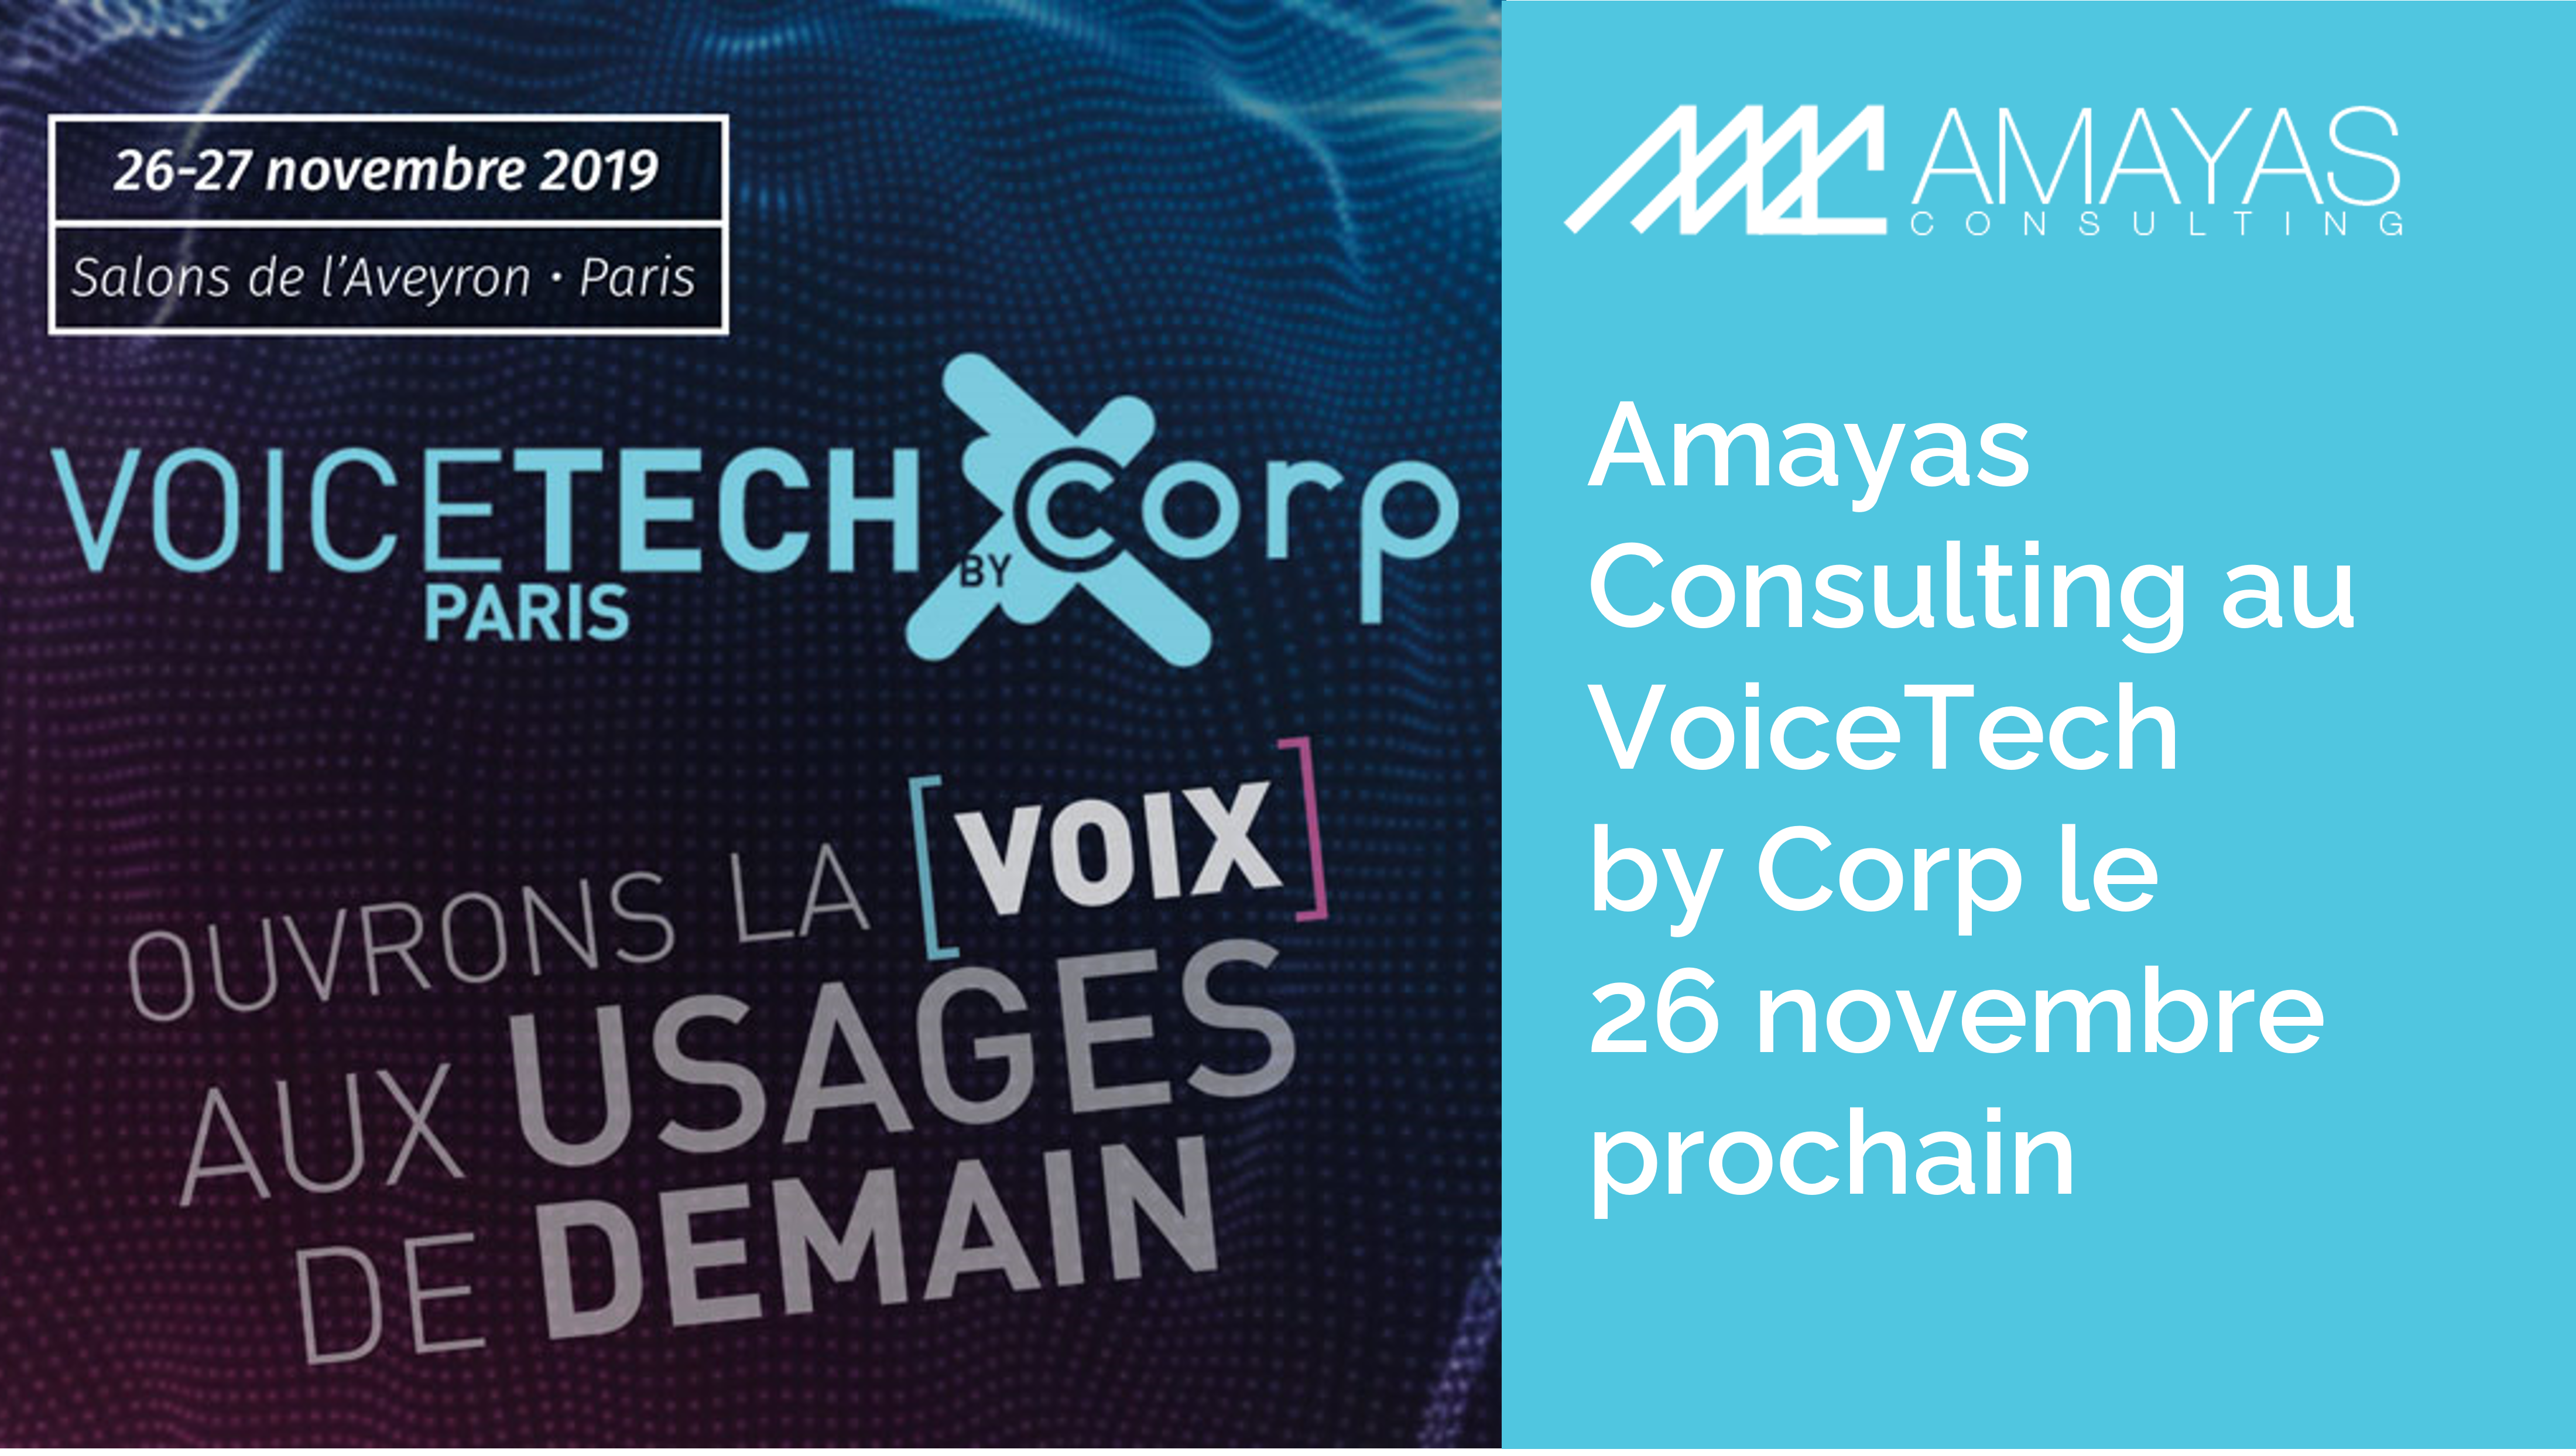 Amayas Consulting au VoiceTech by Corp le 26 novembre prochain